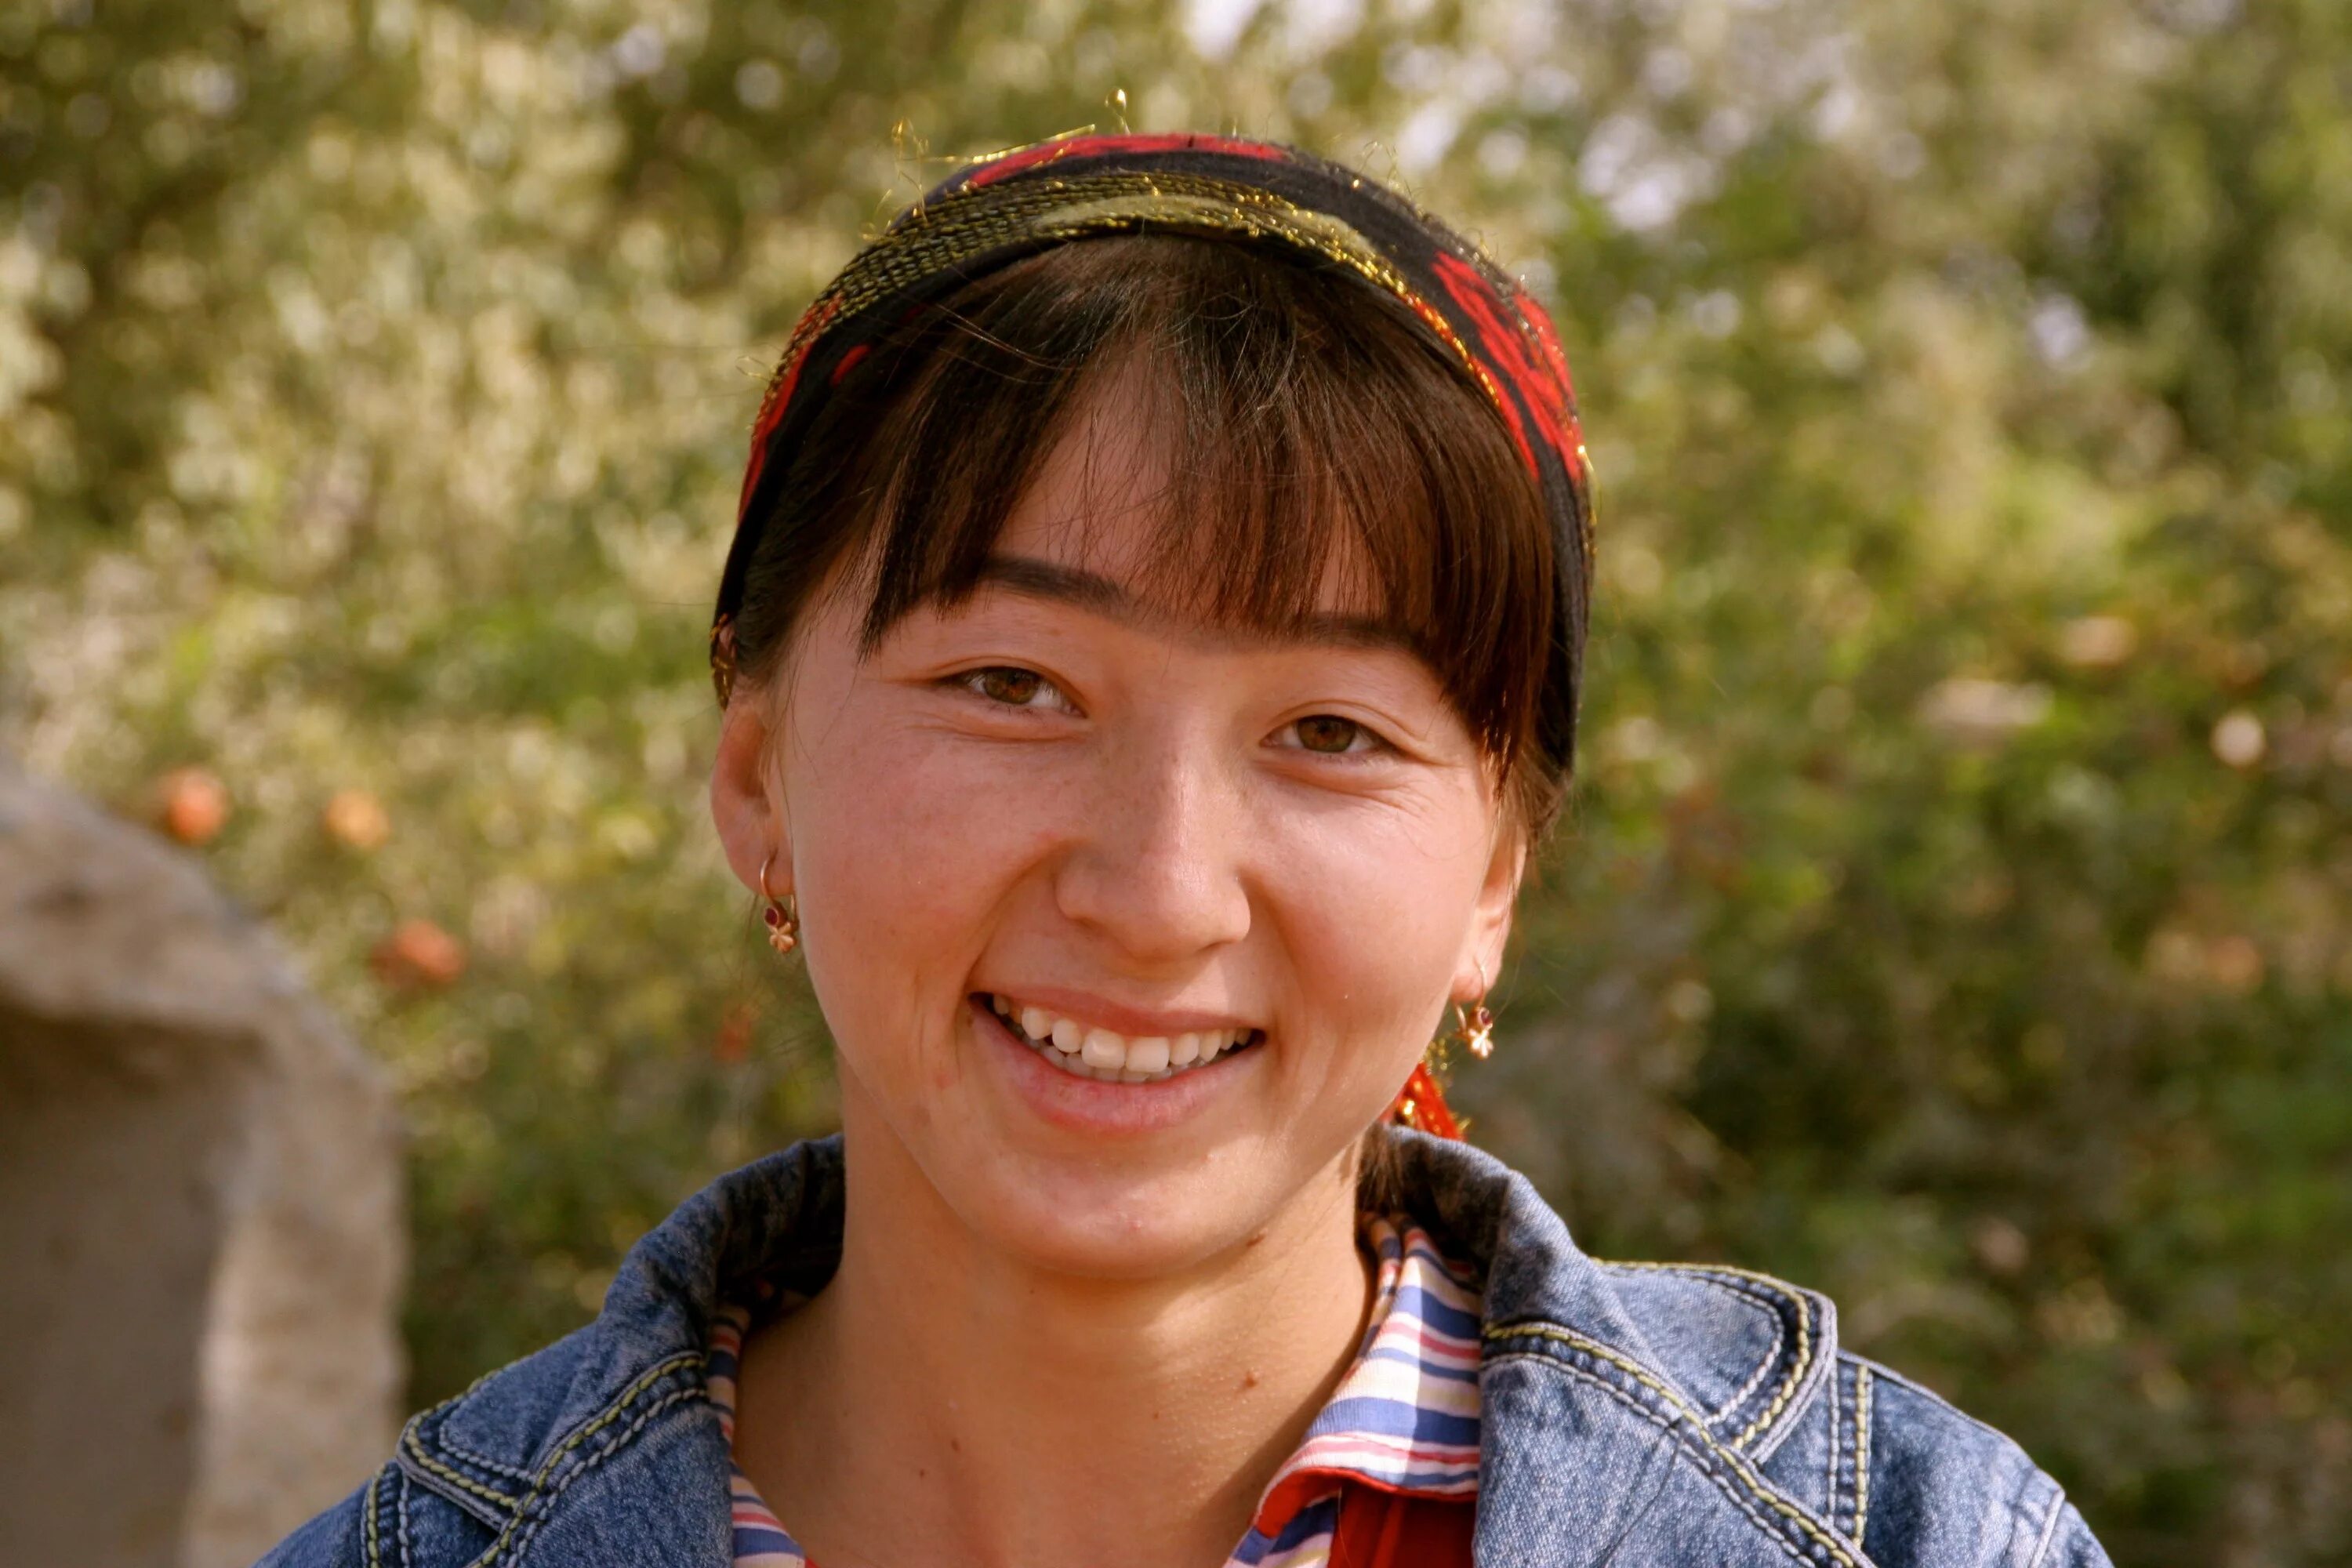 Познакомиться узбека. Узбекские женщины. Узбекские женщины красивые. Обычные узбекские девушки. Узбекские женщины 40 лет красивые.